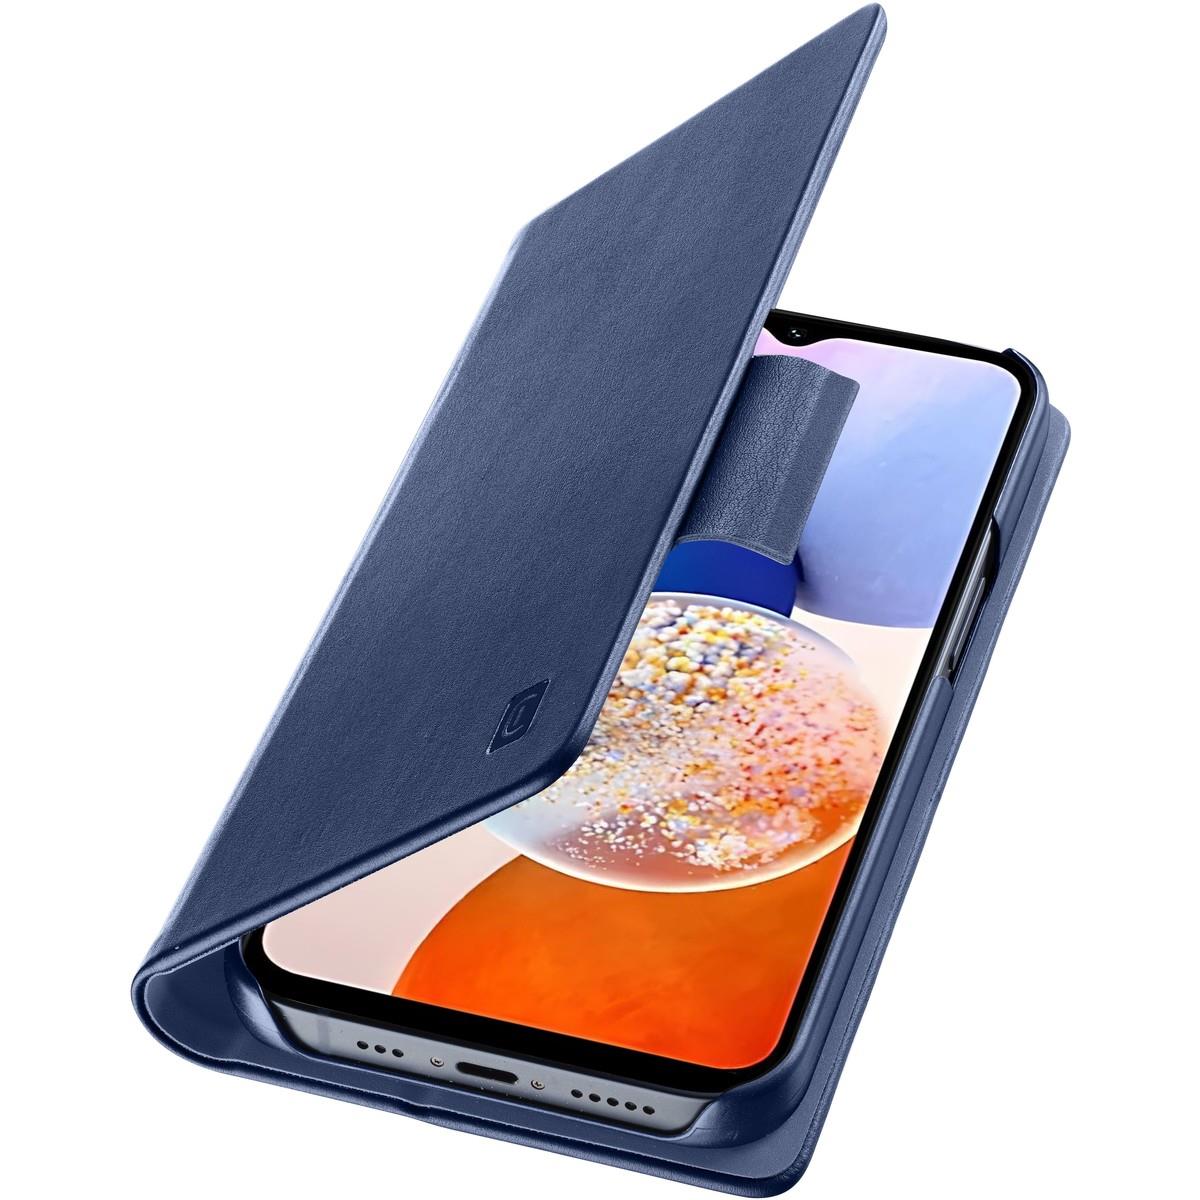 Bookcase BOOK für Samsung Galaxy A15 4G/5G